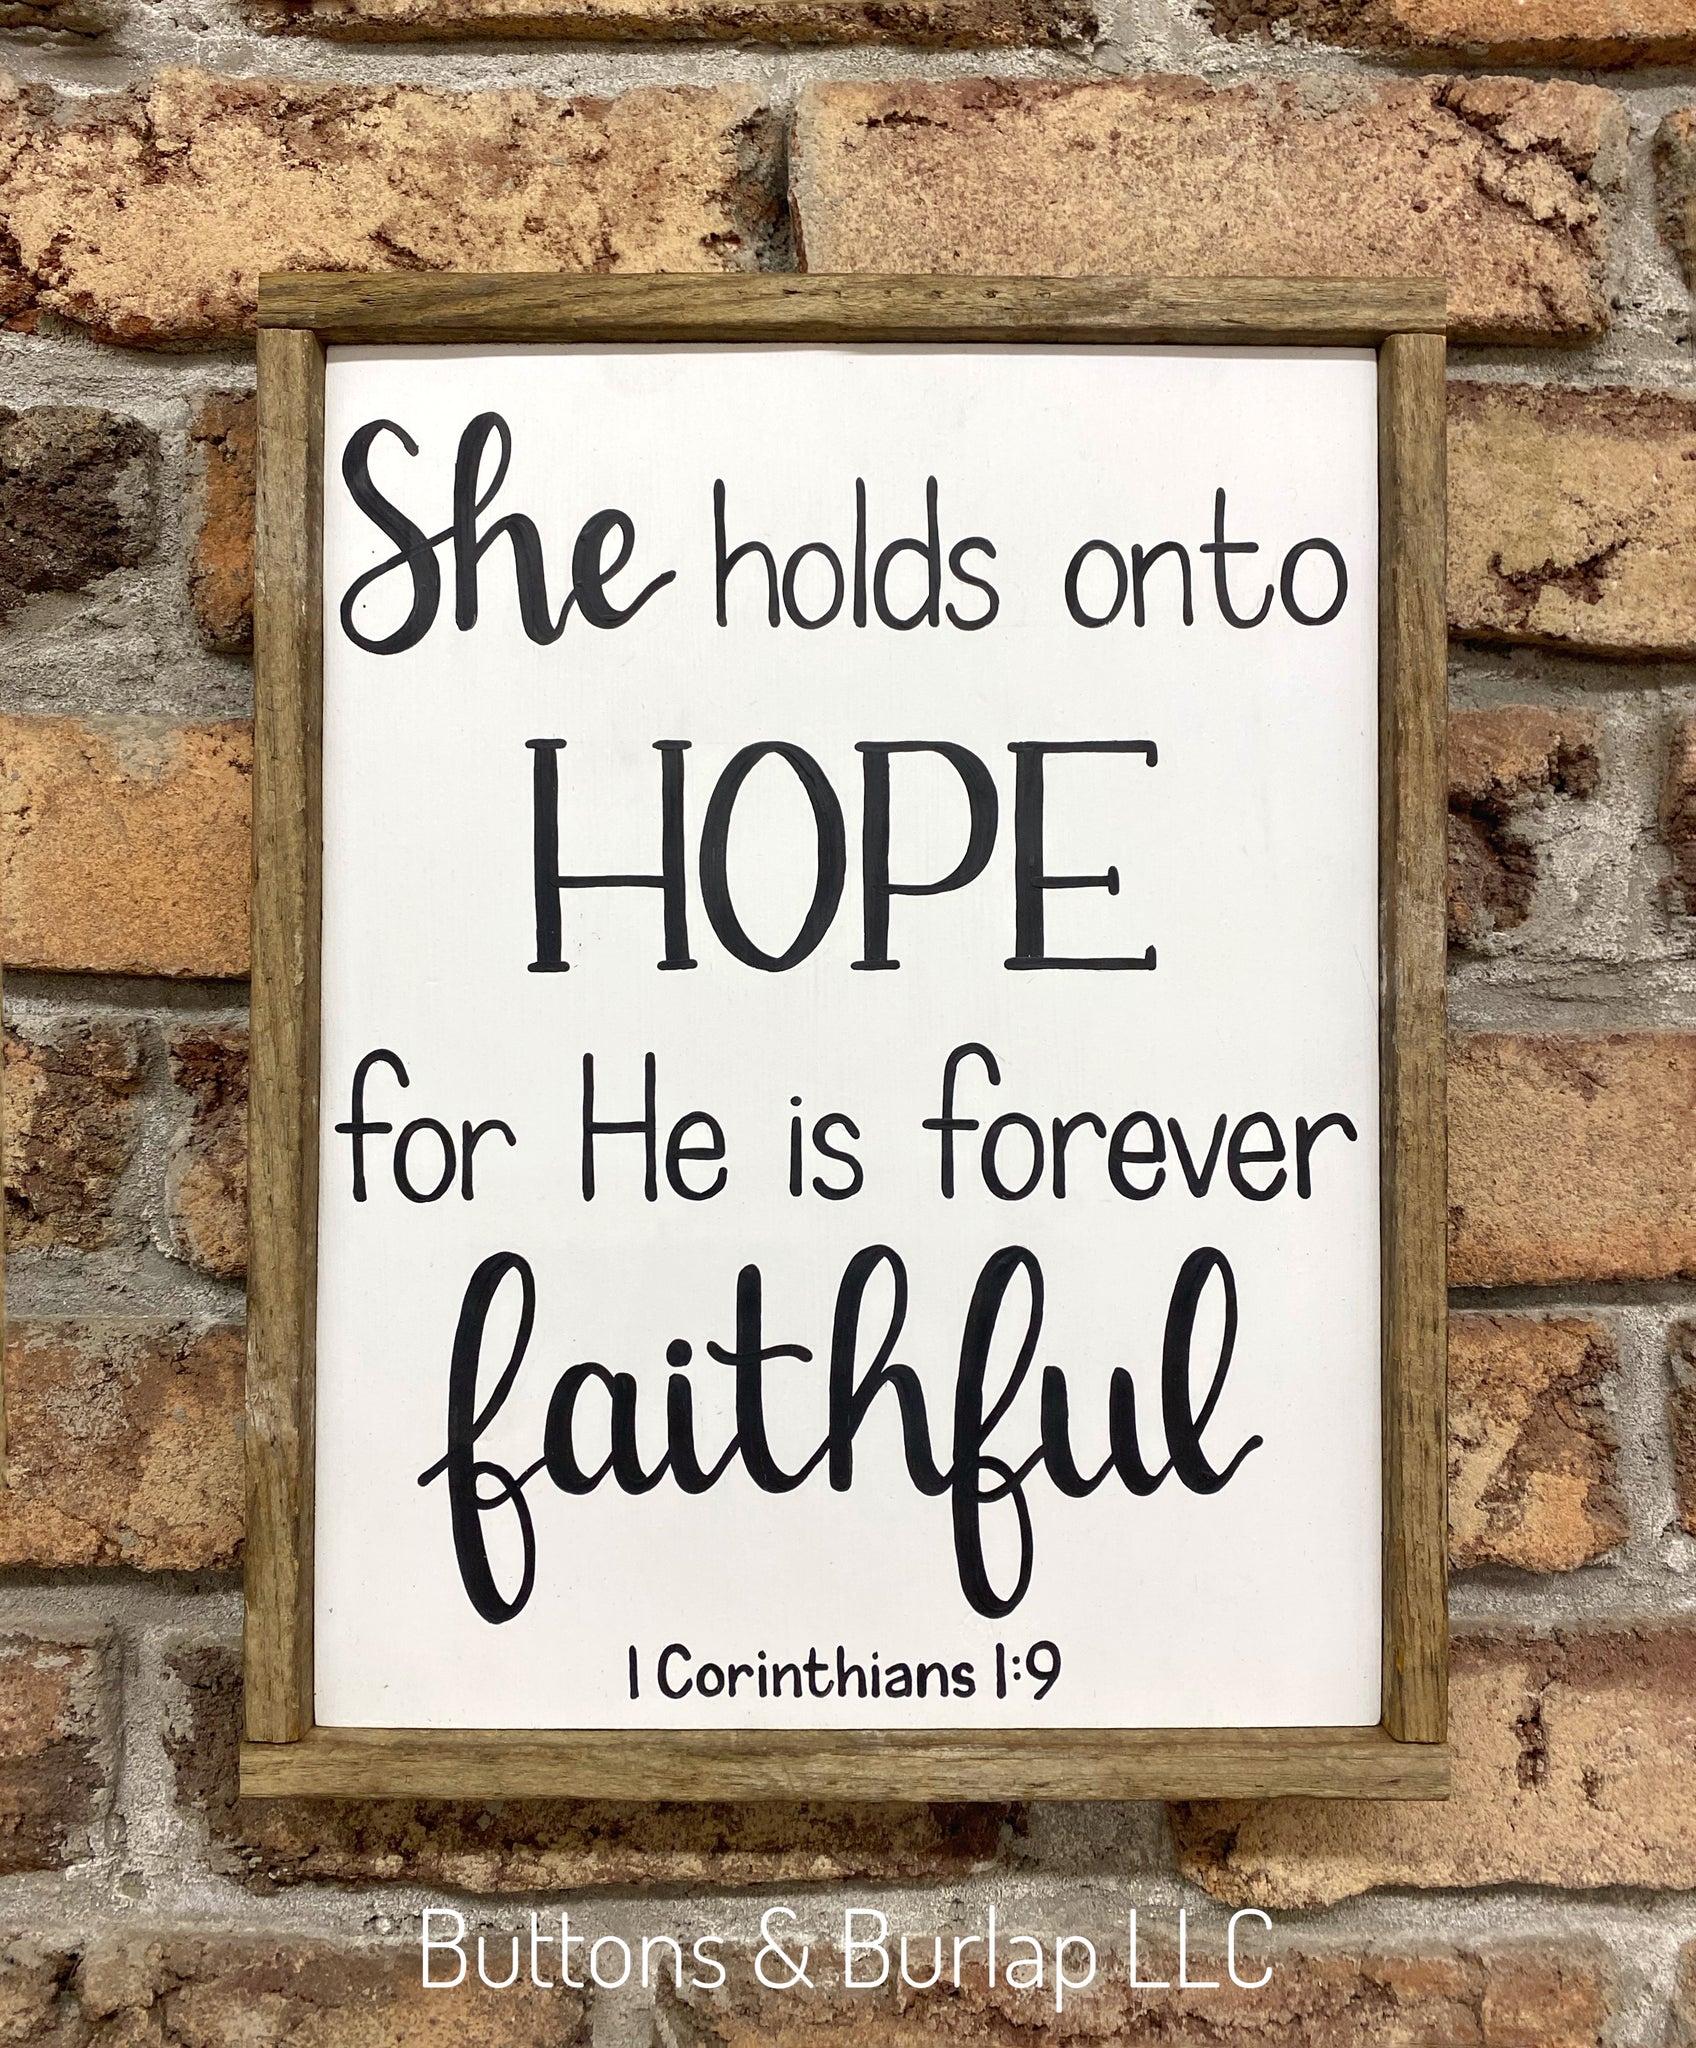 She holds onto HOPE